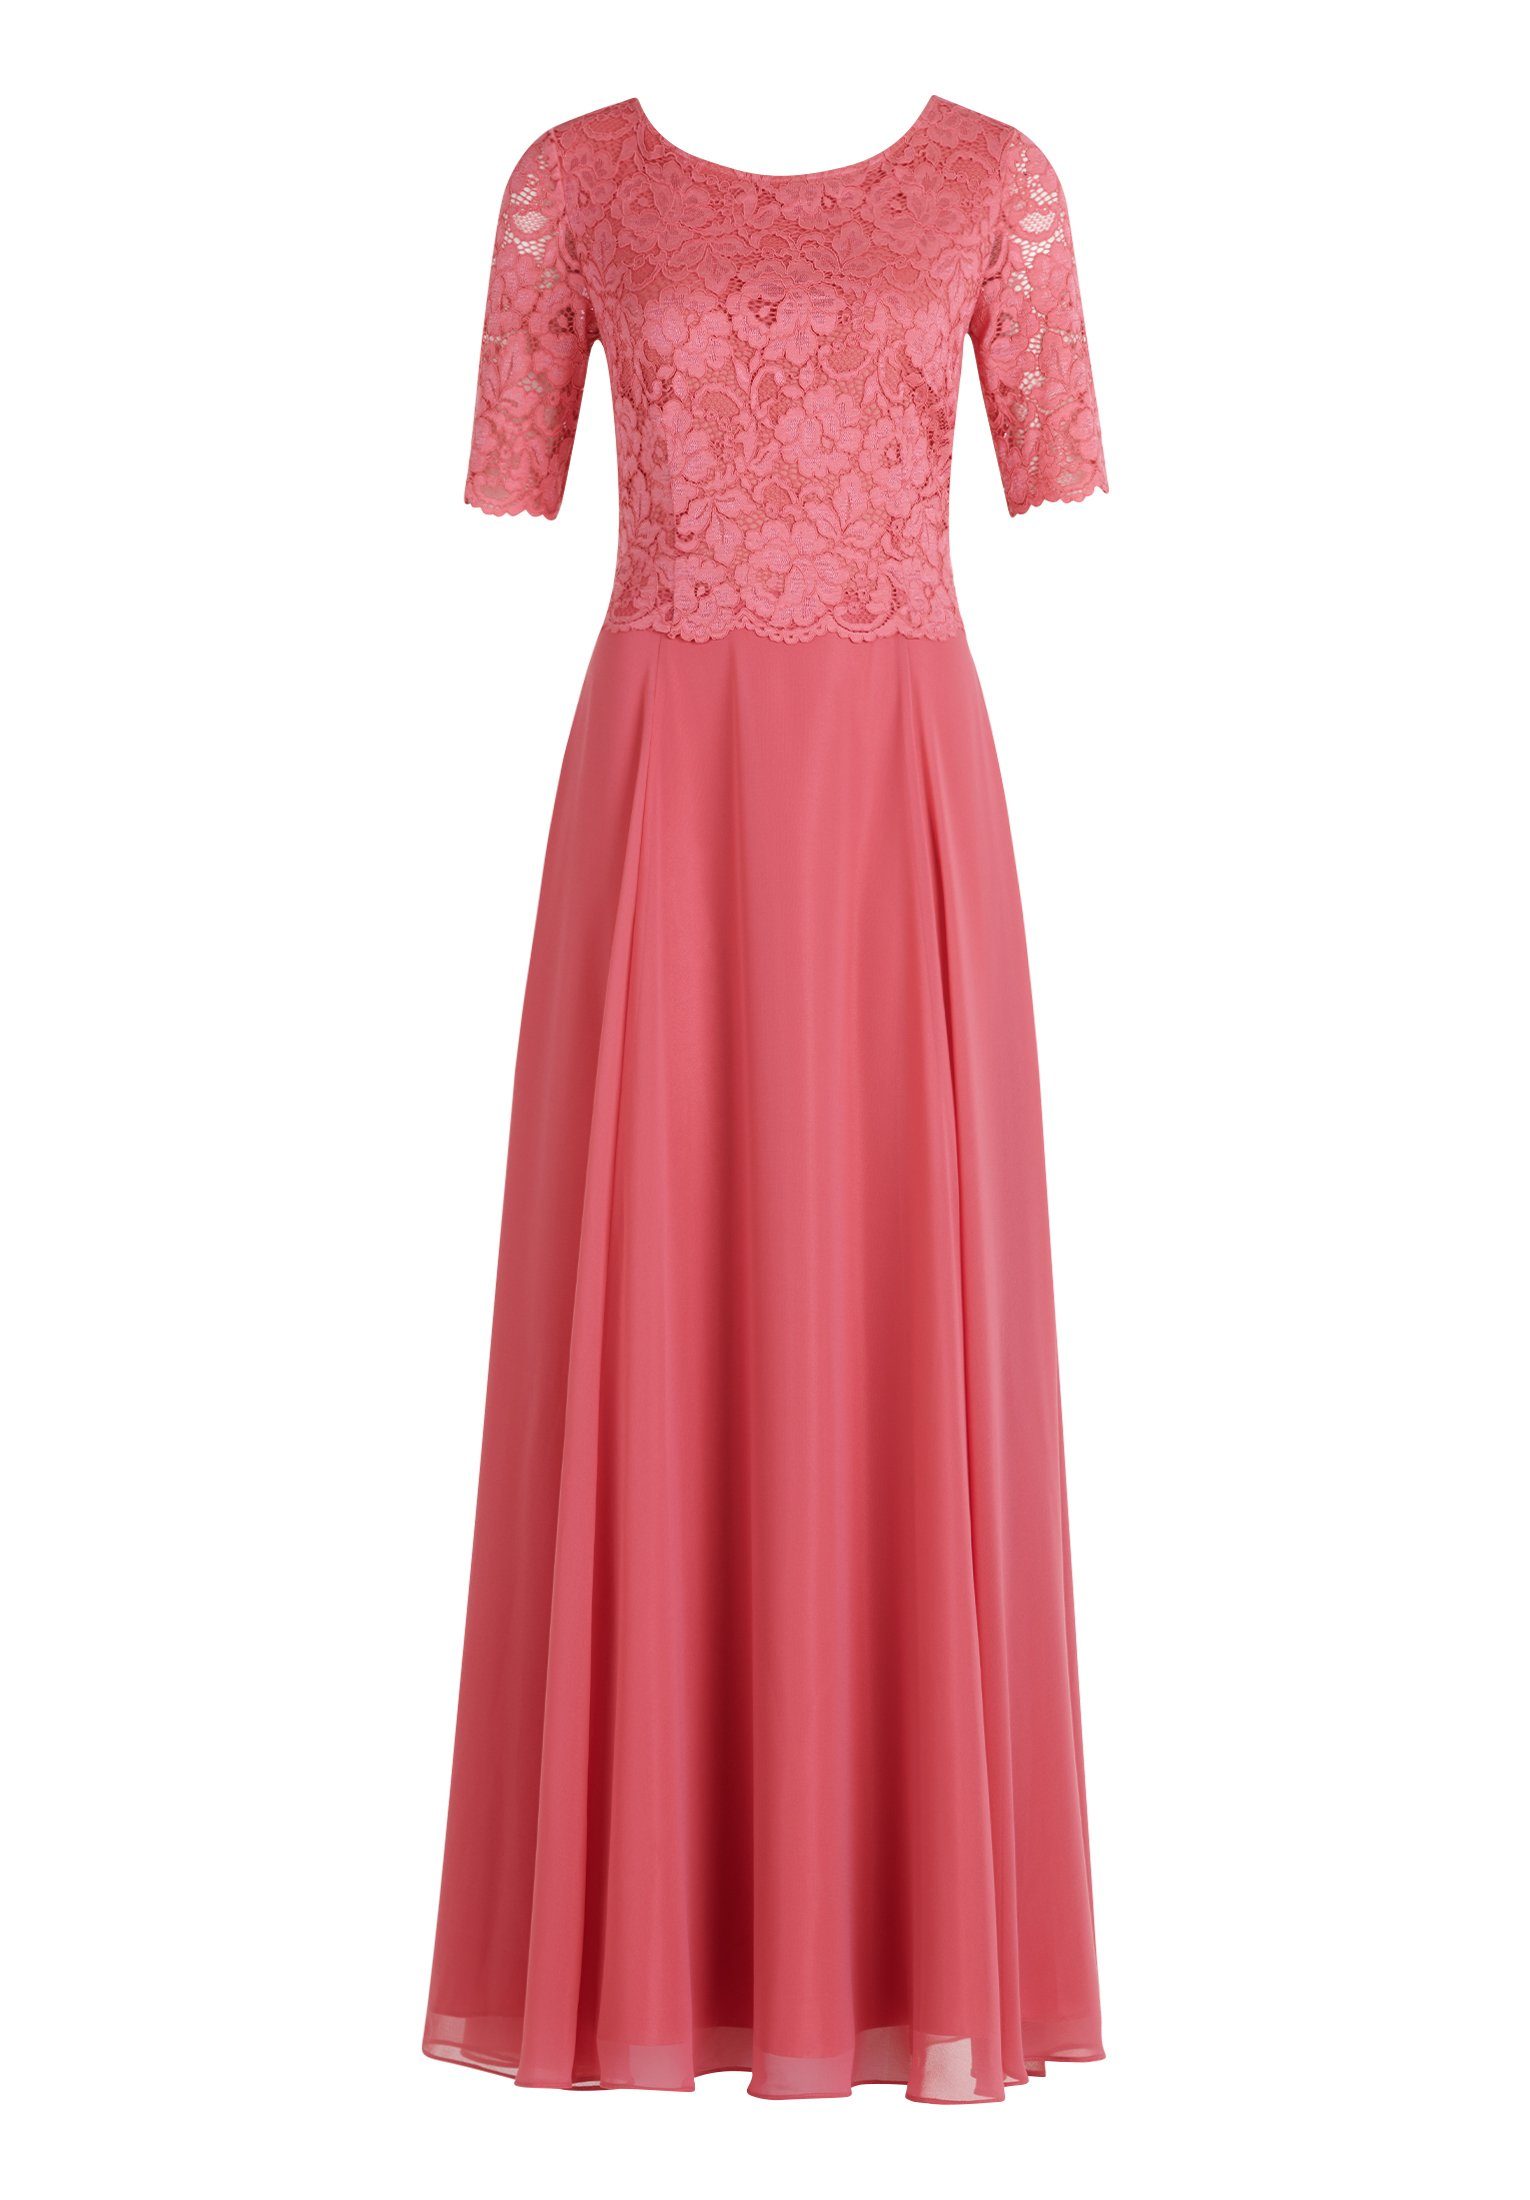 Vera Mont Abendkleid Kleid Lang 1/2 Arm online kaufen | OTTO